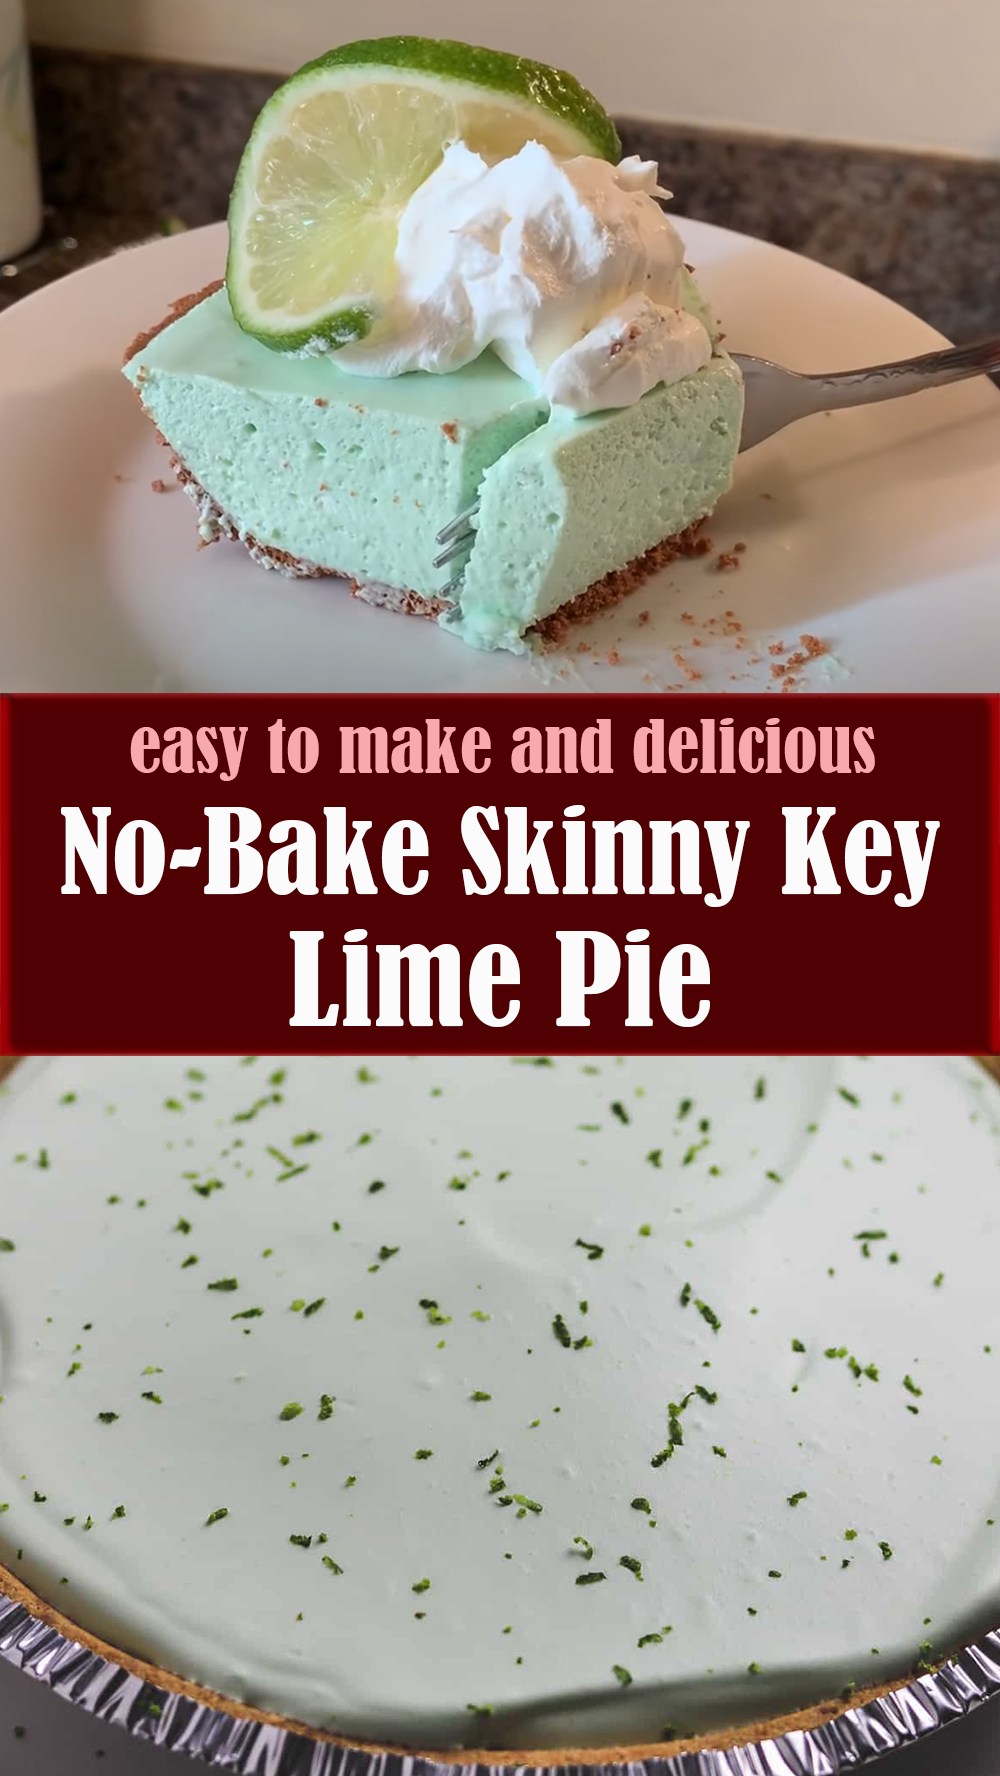 Easy No-Bake Skinny Key Lime Pie